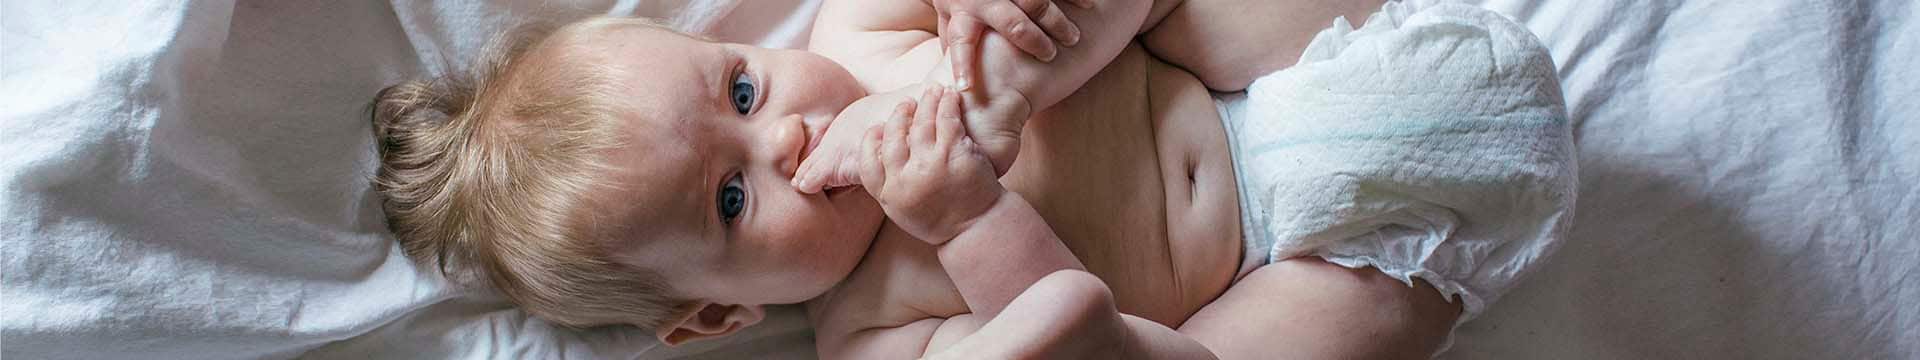 Опрелости у новорожденных (32 фото): чем лечить у детей и как они выглядят, лечение в паху и на шее у грудничка, как обрабатывать и методы профилактики